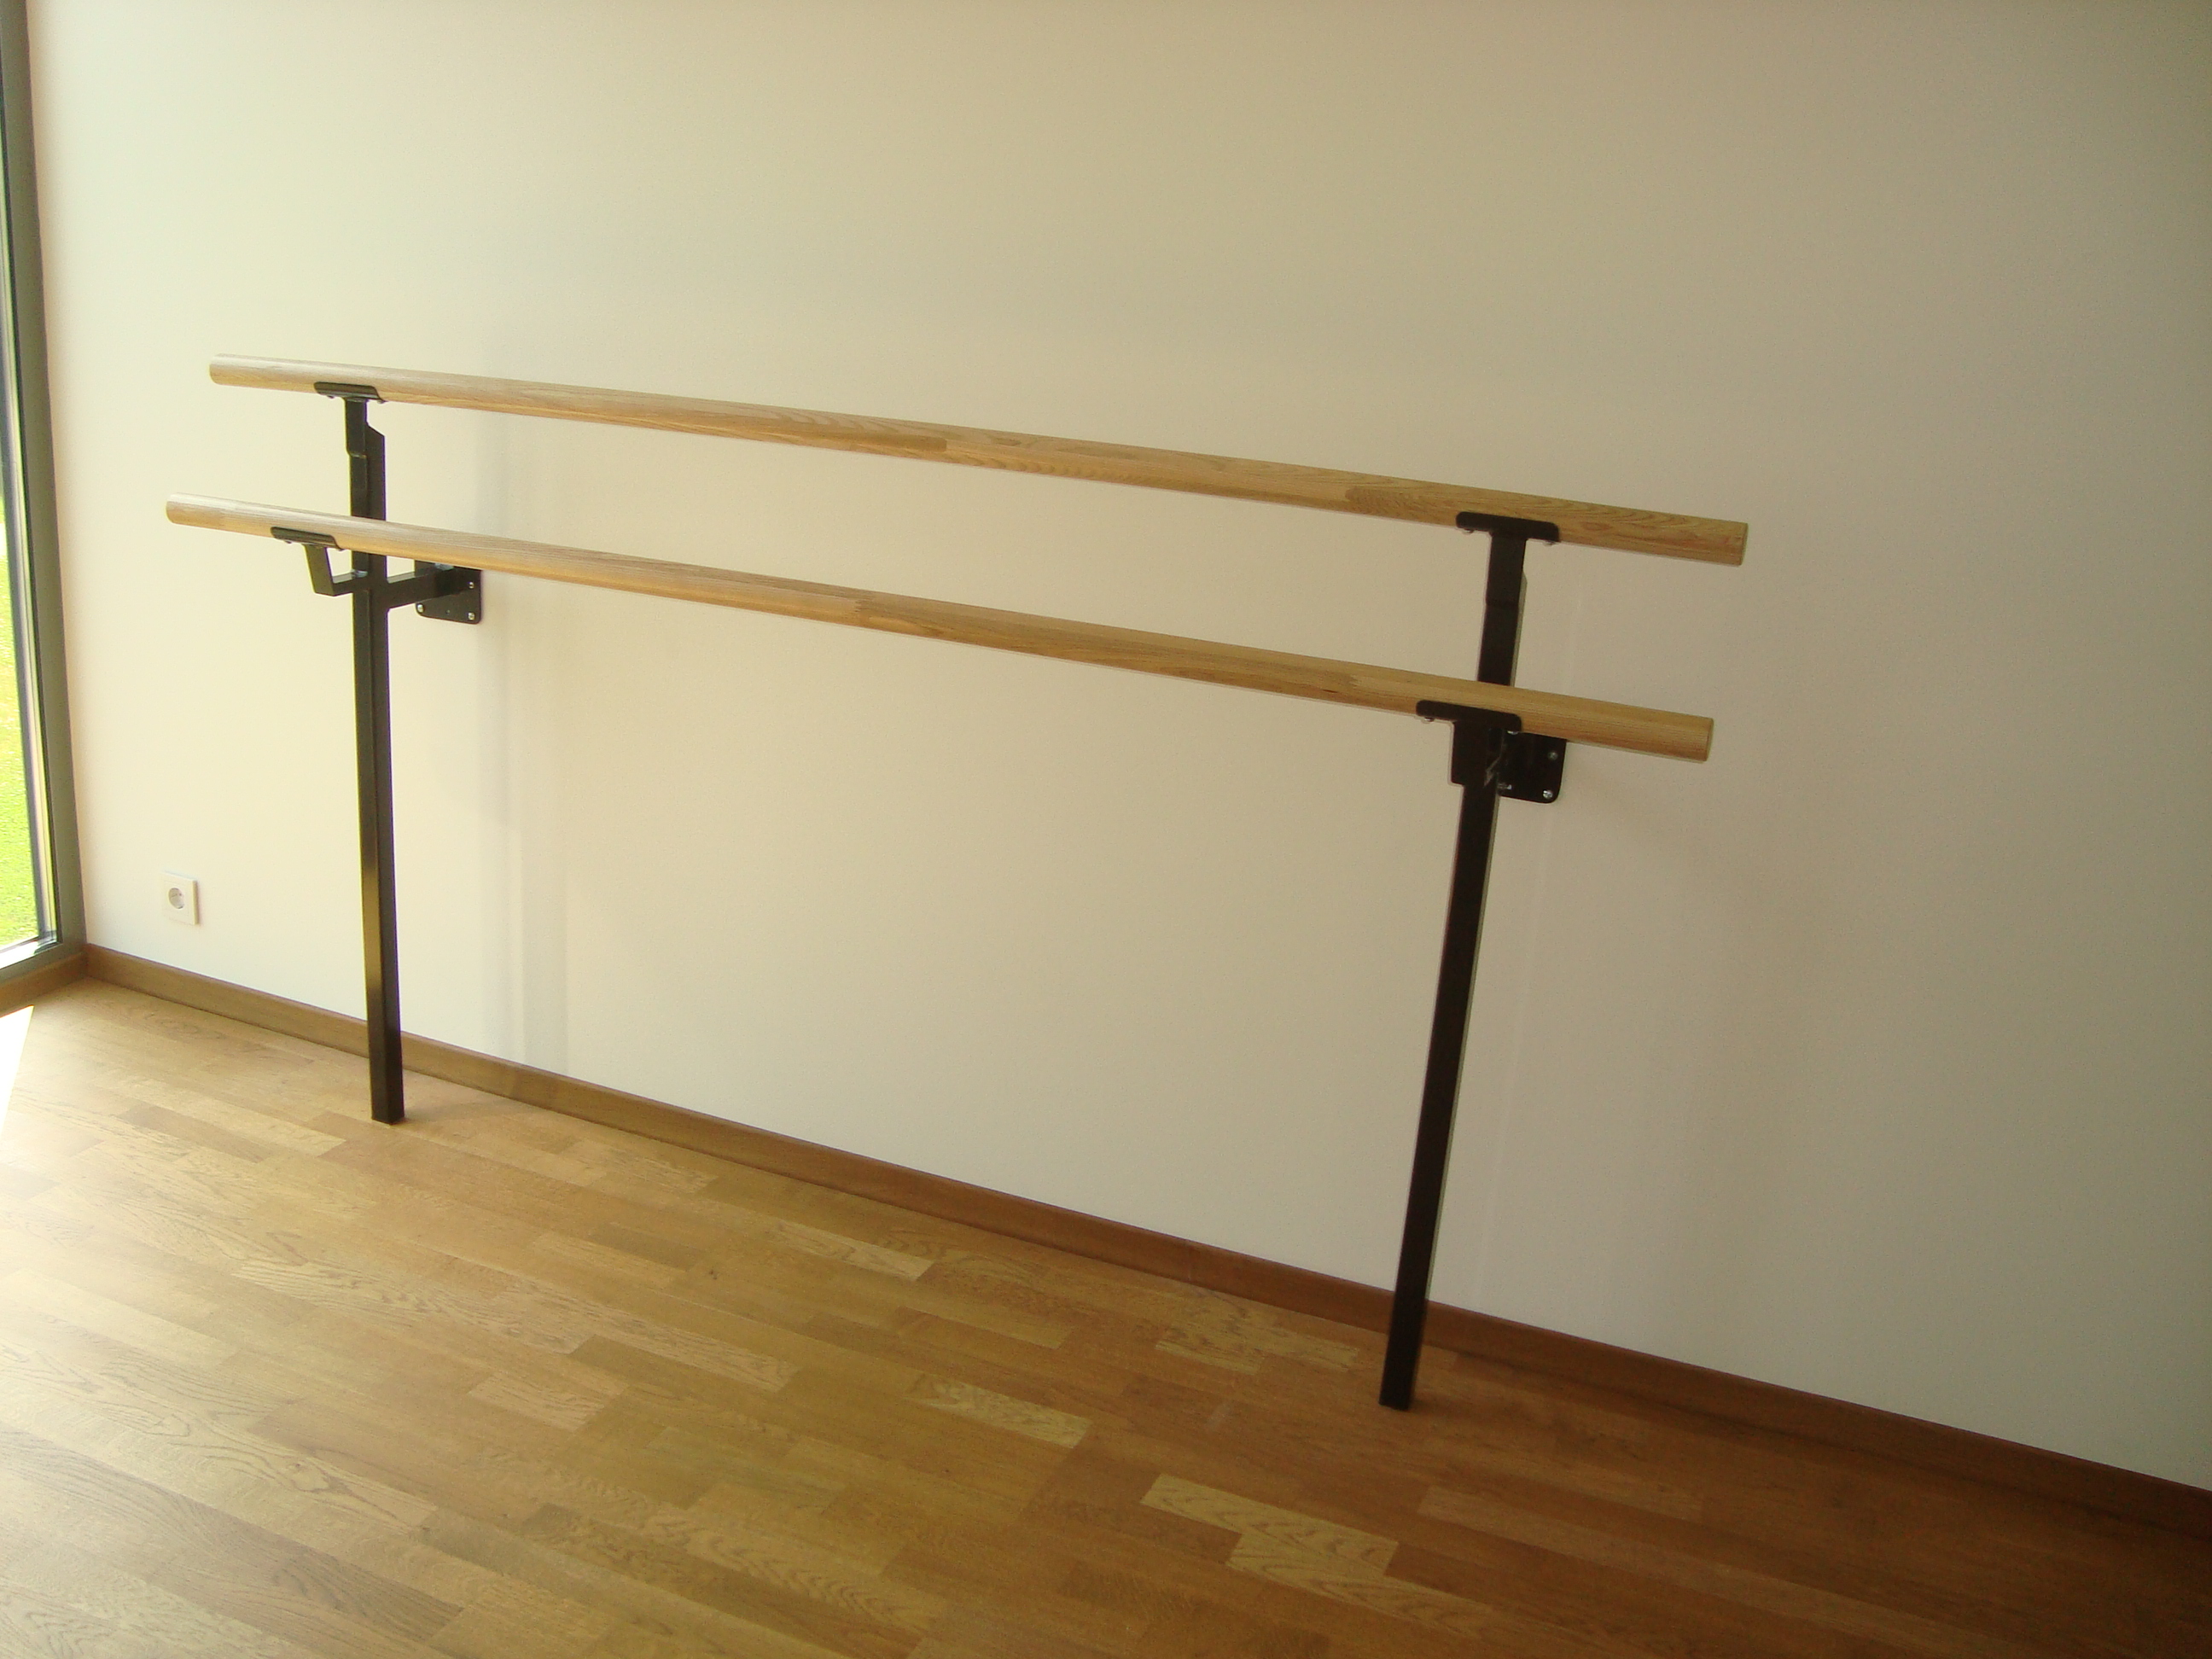 Juliet - Double Bar ADJUSTABLE Floor Mount Ballet Barre System (wood) For  Ballet/Dance Only